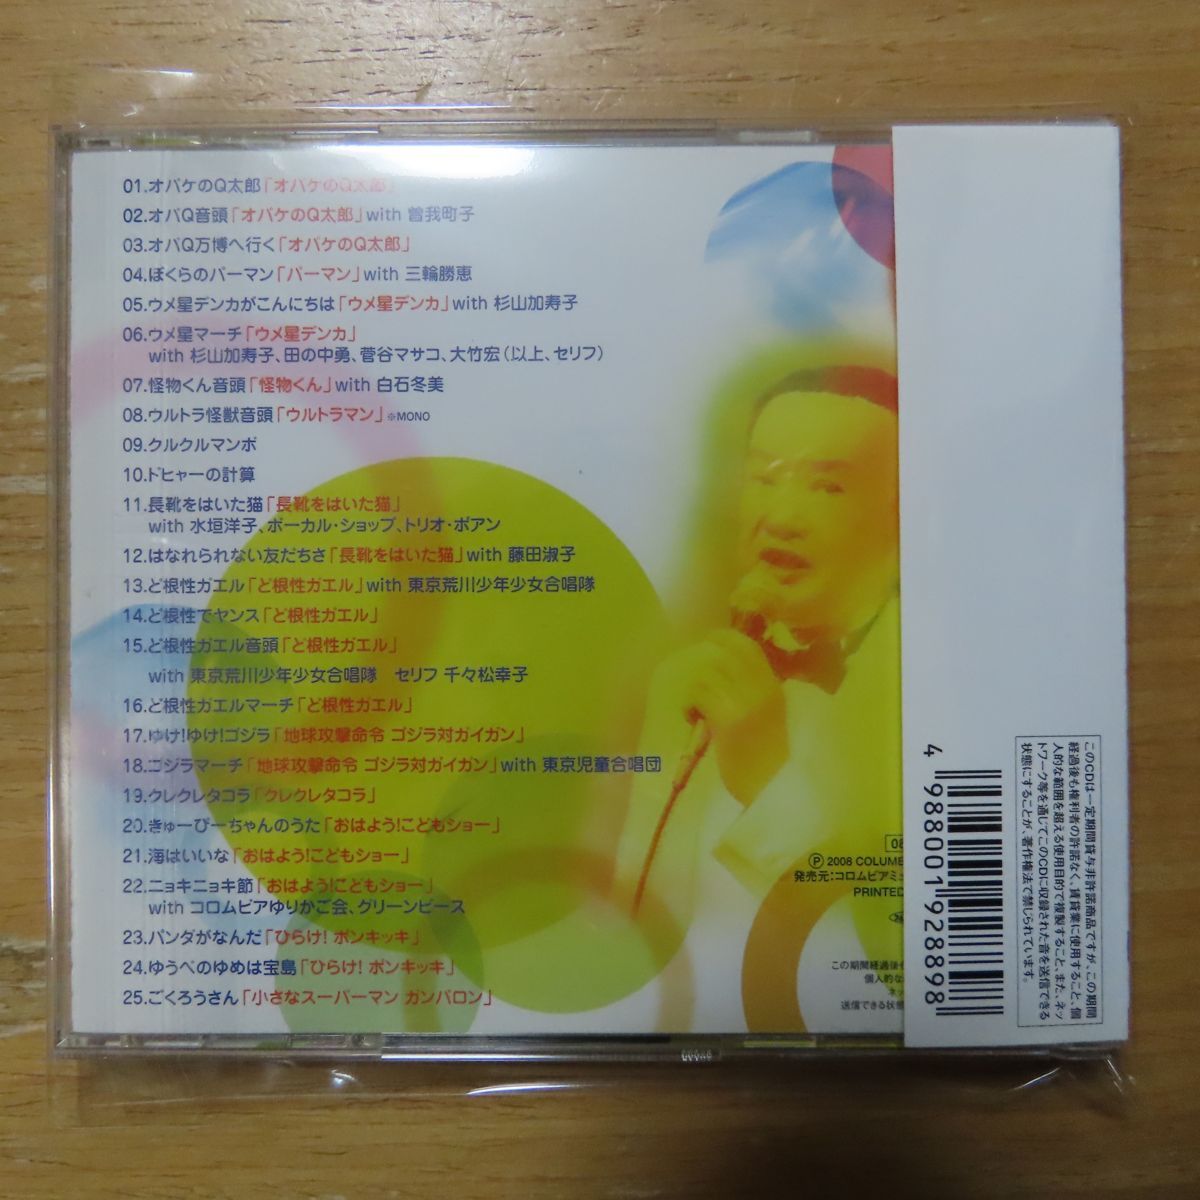 4988001928898;[CD/ rare!] Ishikawa ./ anime song collection COCX-34601